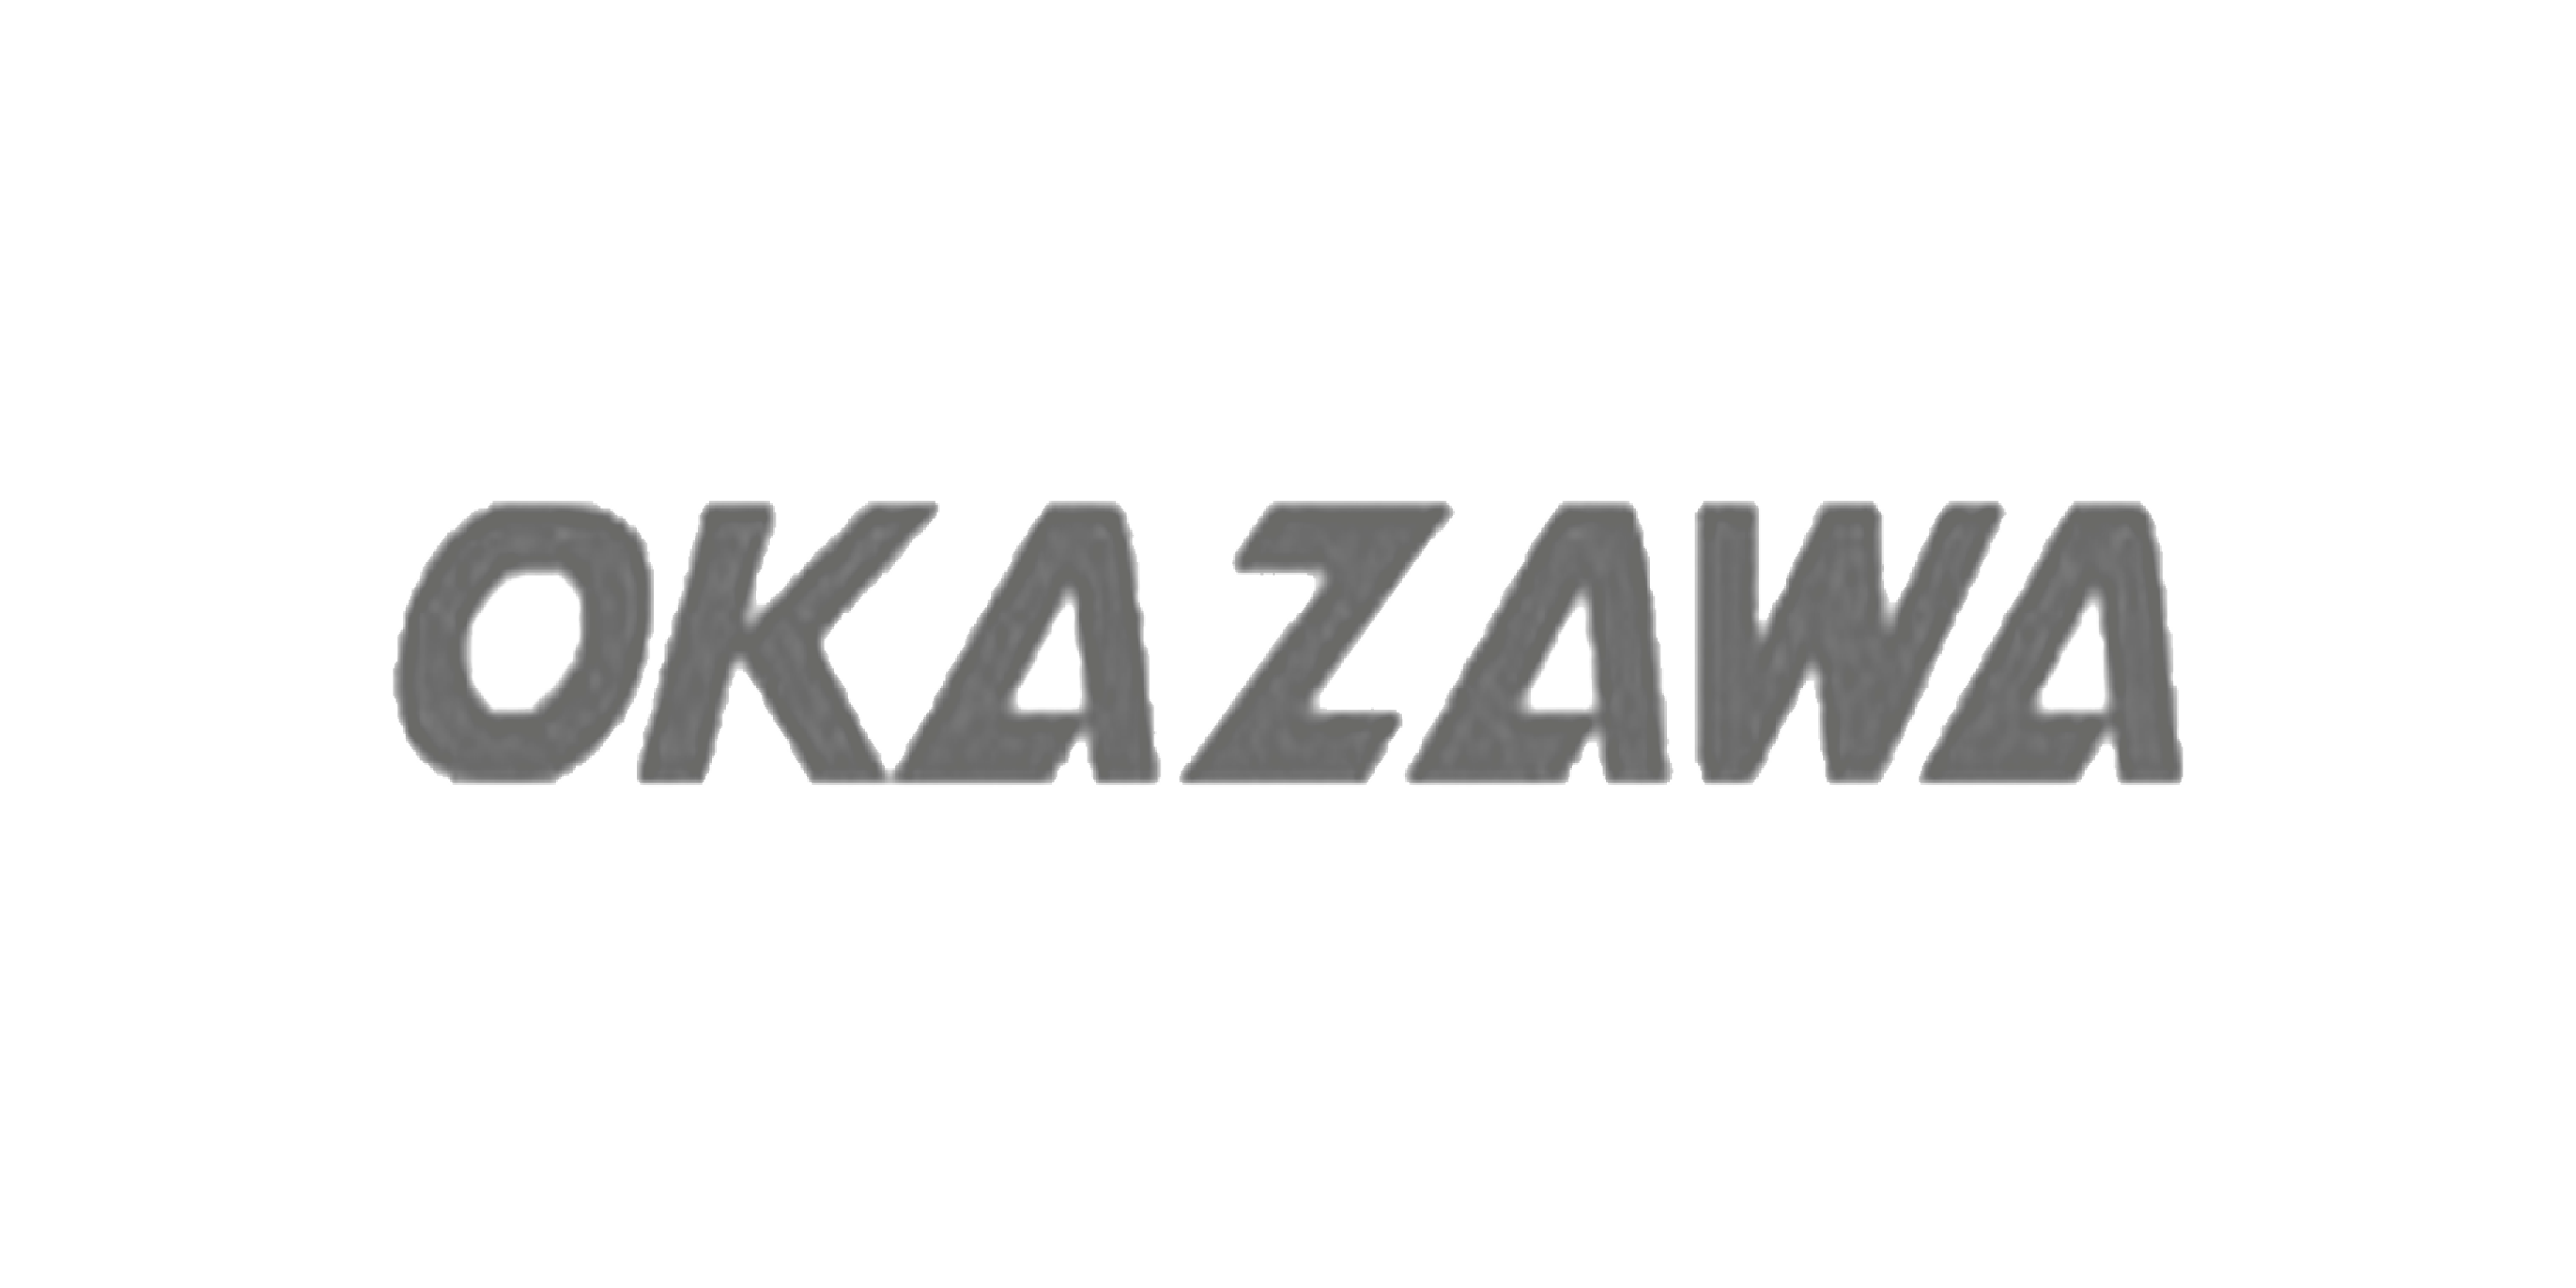 OKAZAWA